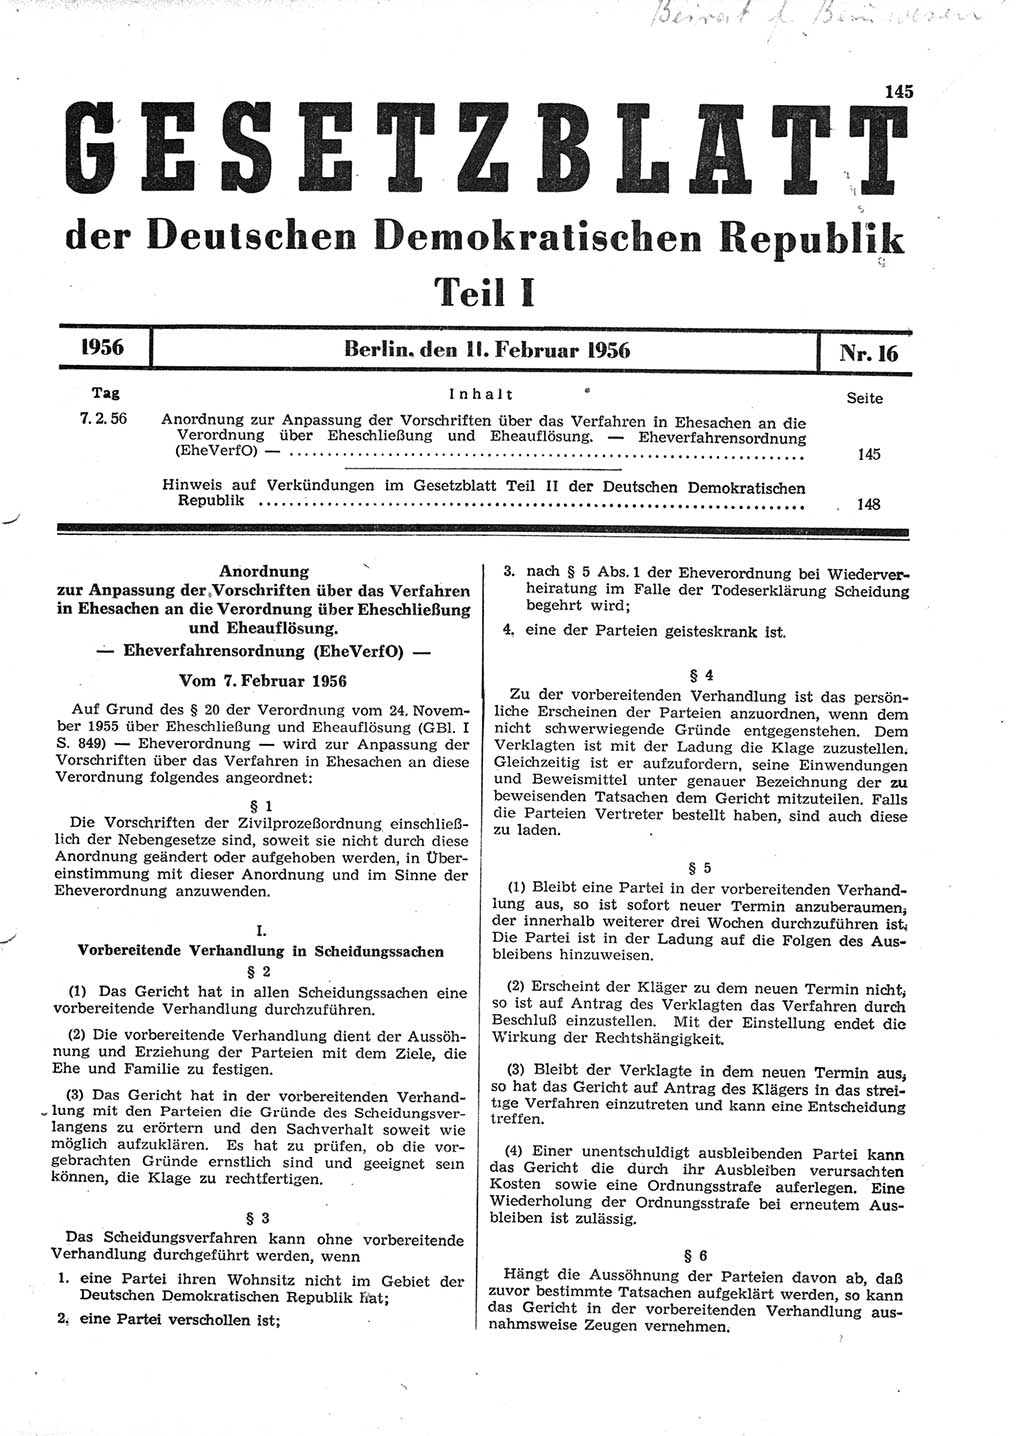 Gesetzblatt (GBl.) der Deutschen Demokratischen Republik (DDR) Teil Ⅰ 1956, Seite 145 (GBl. DDR Ⅰ 1956, S. 145)